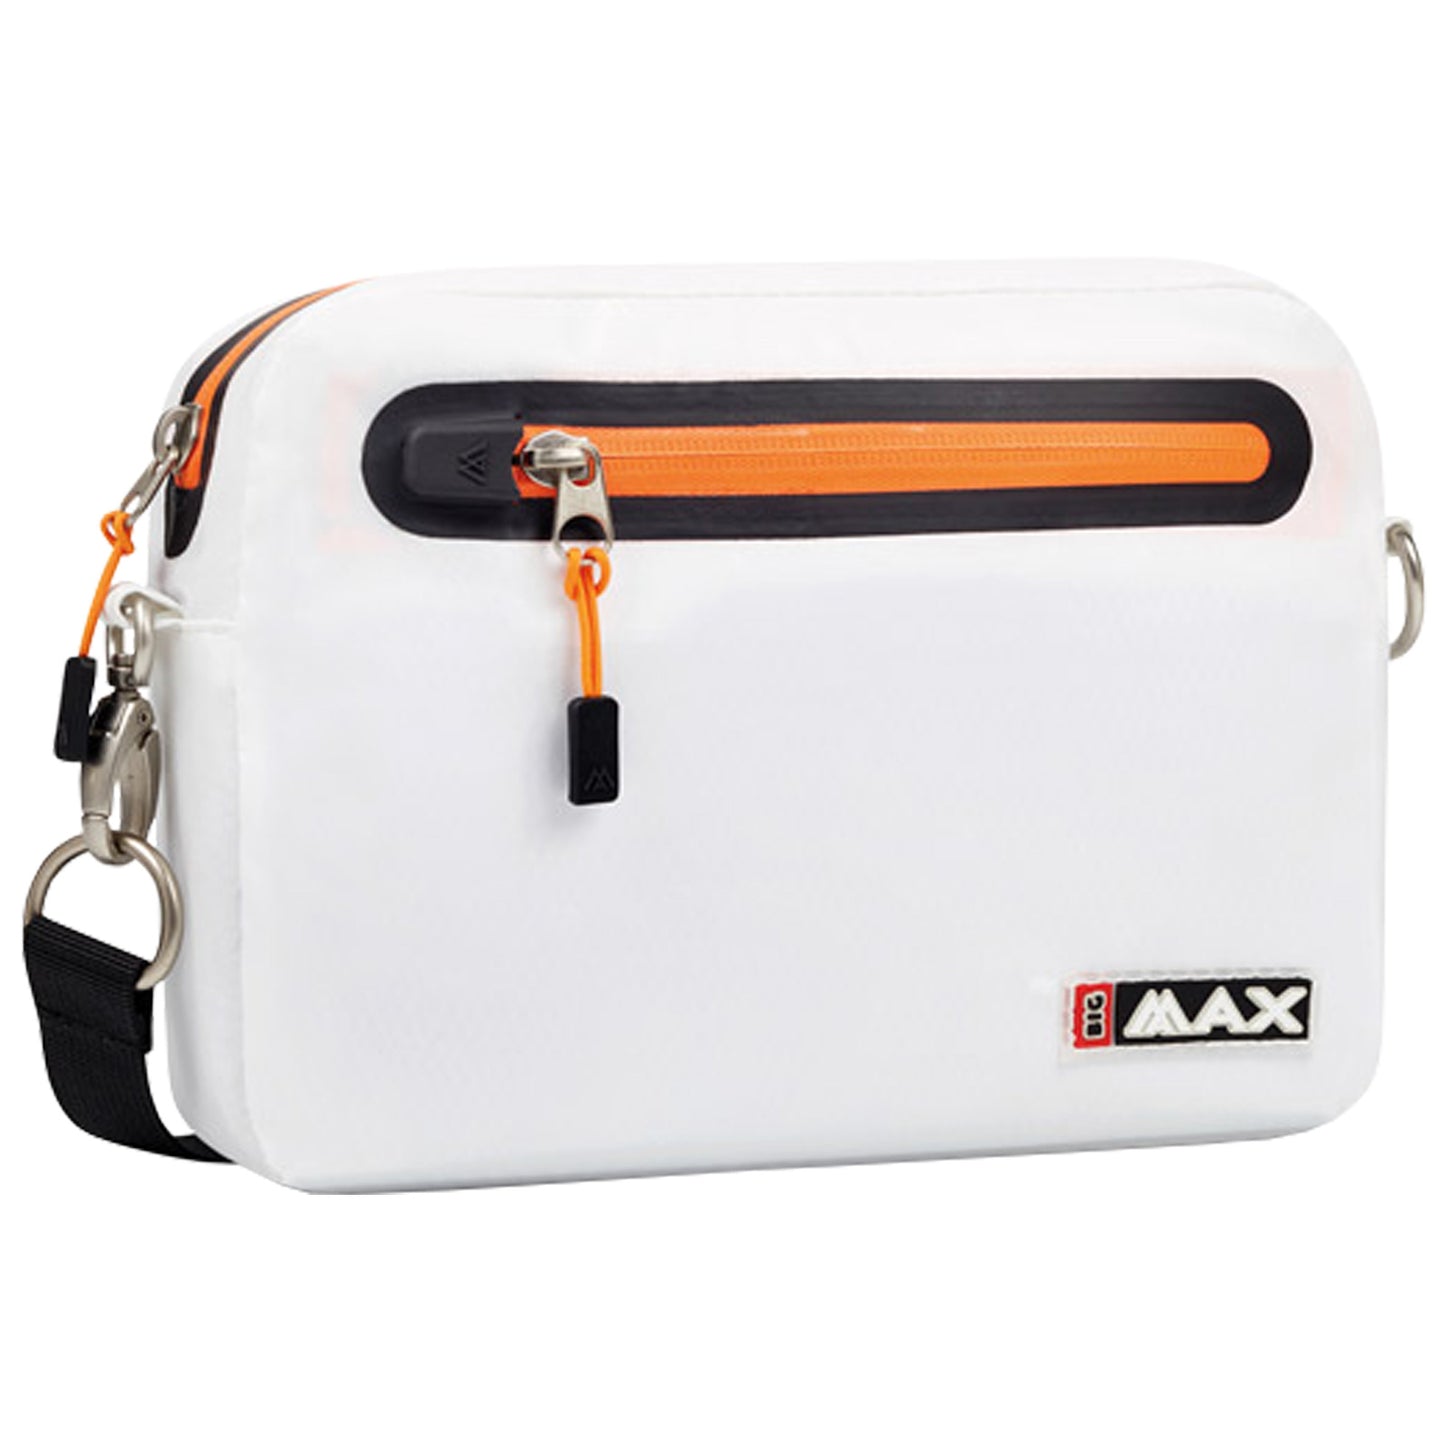 Big Max Waterproof Aqua Valuables Bag